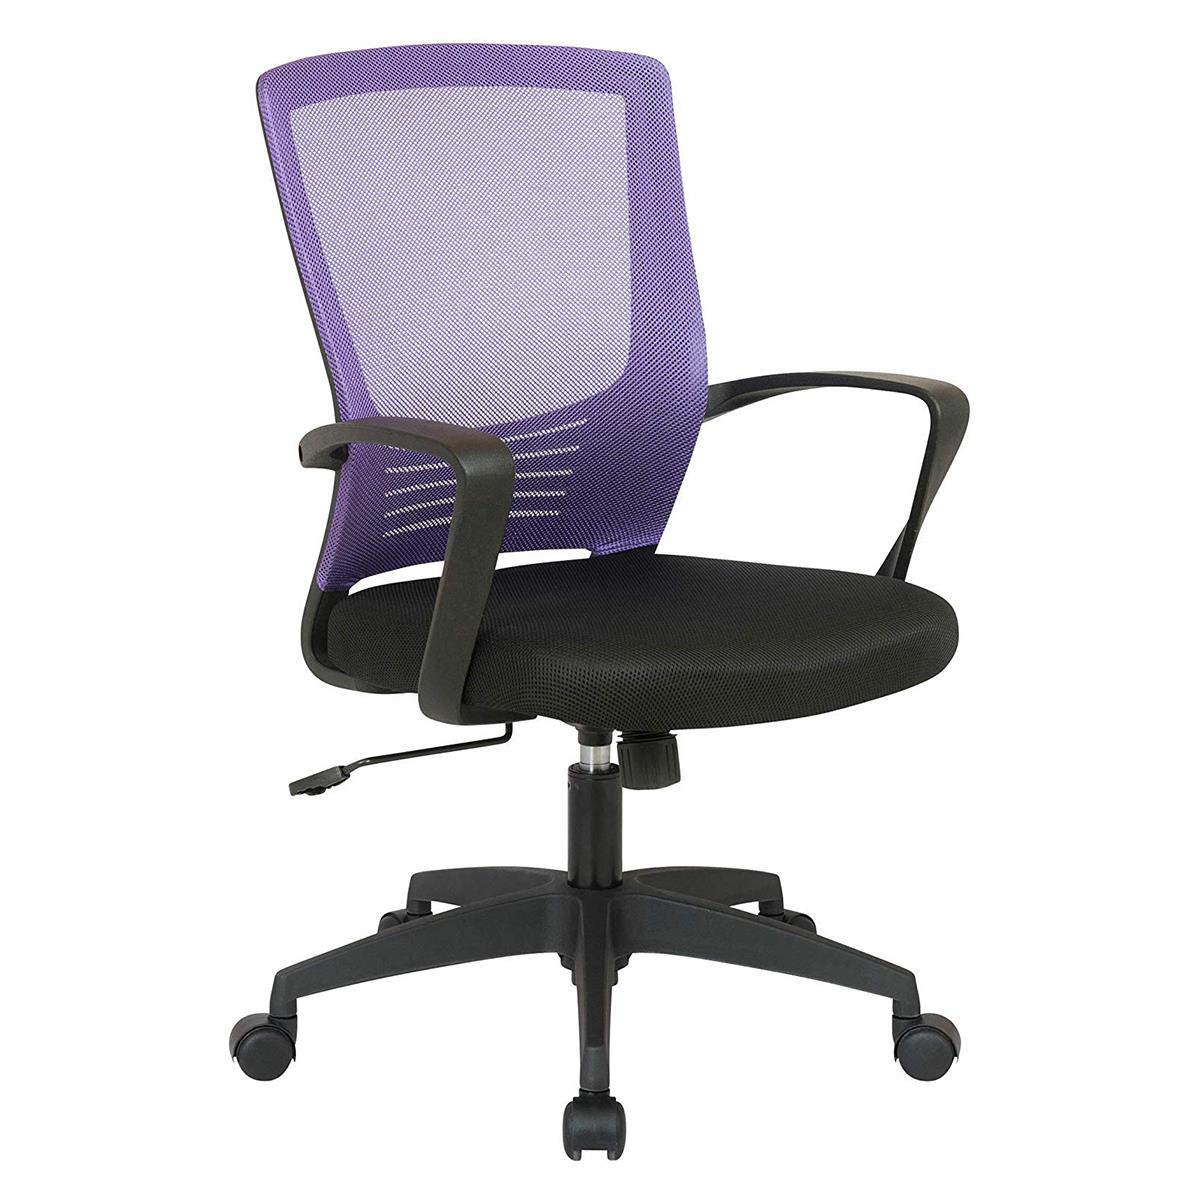 Chaise de Bureau MALIBU, Design moderne et Ergonomique, Maille Respirable, Violet